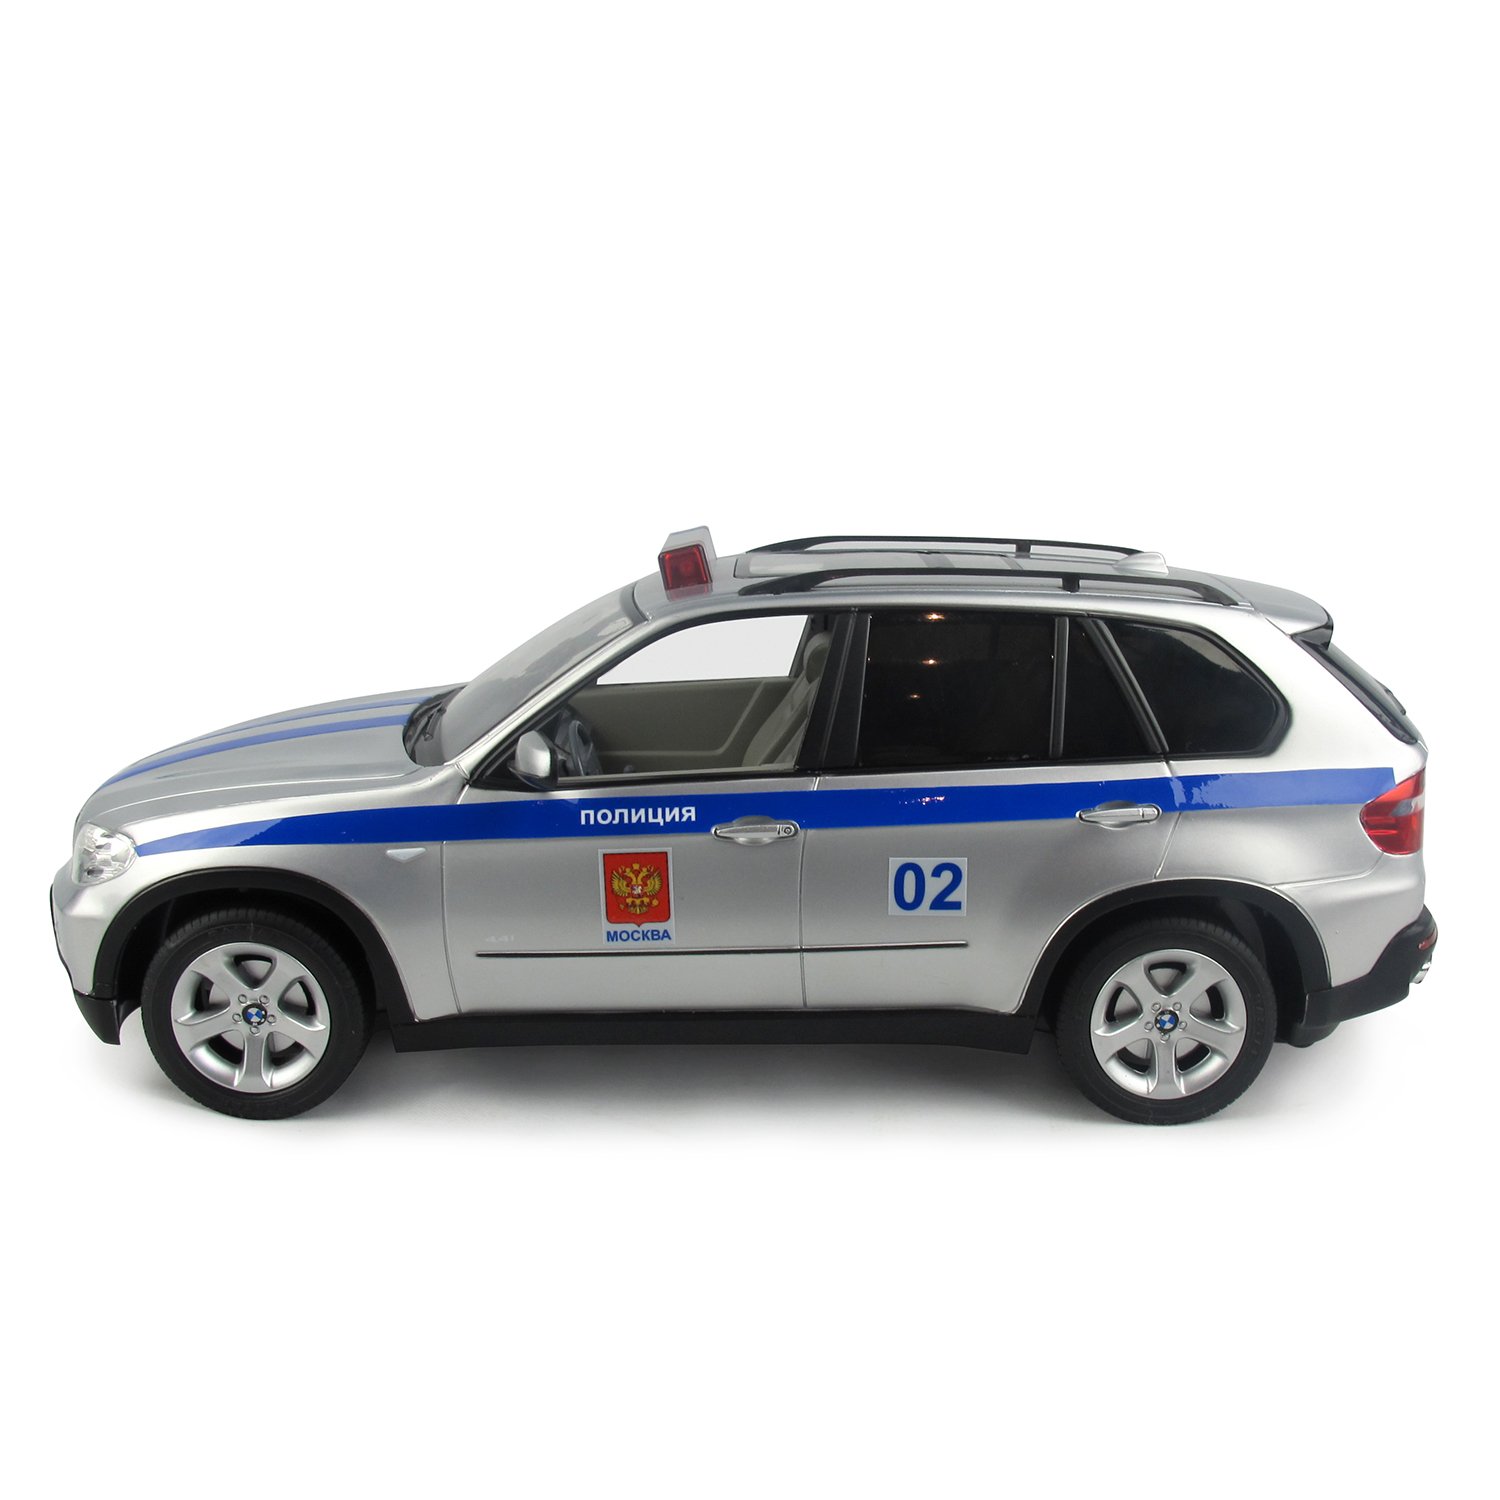 Машинка Rastar радиоуправляемая 1:18 Bmw X5 Полицейская 23100P